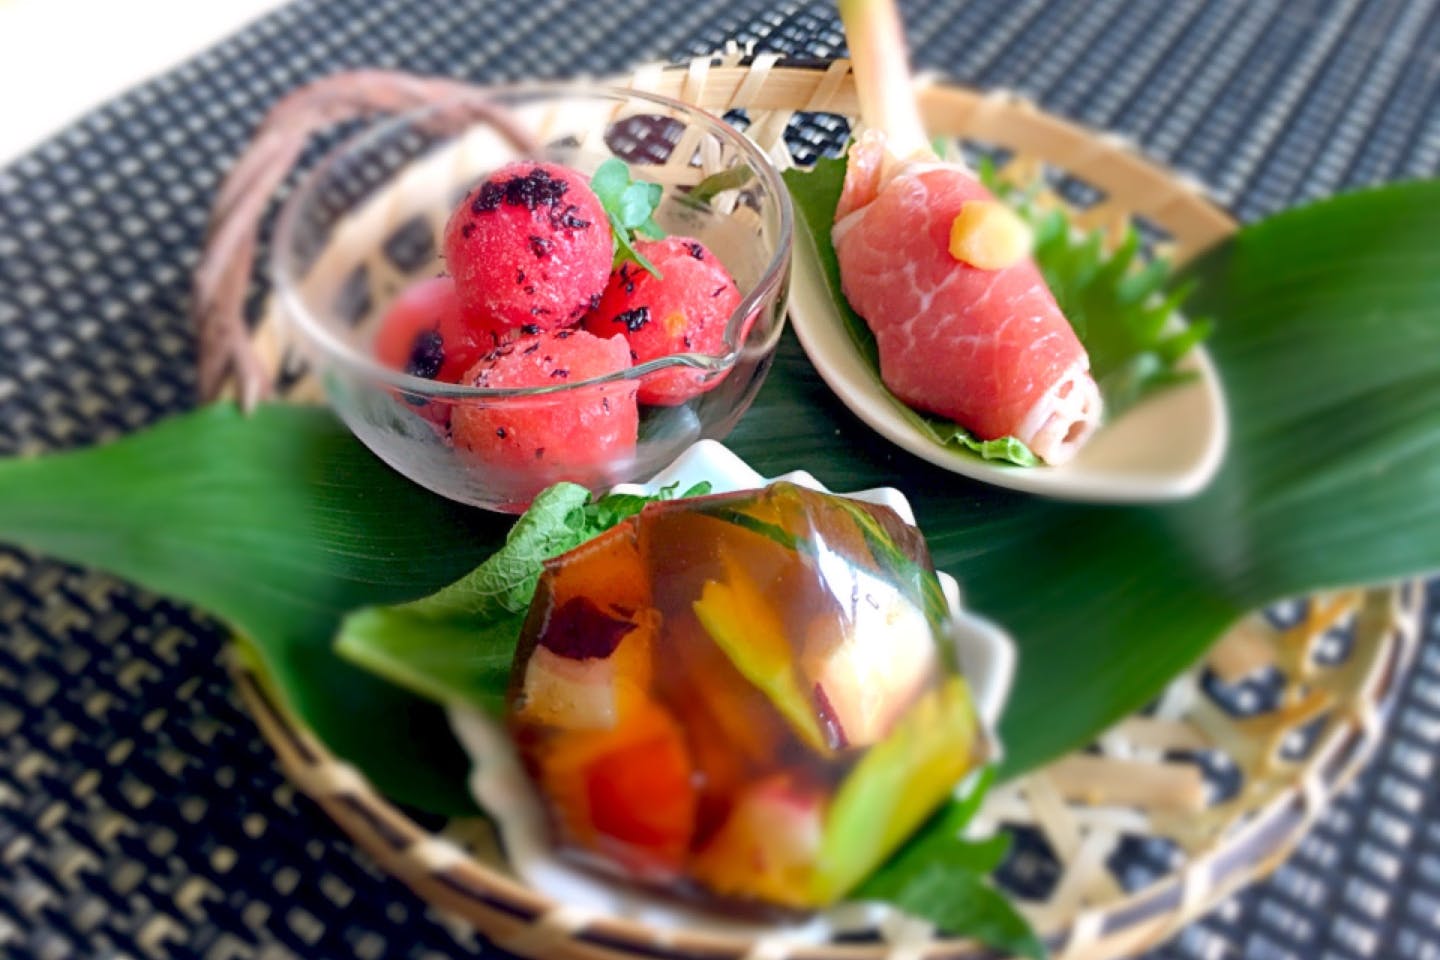 【神奈川・厚木・料理教室】鮮やかなモザイク寿司でひんやりごちそう葉月御膳プラン